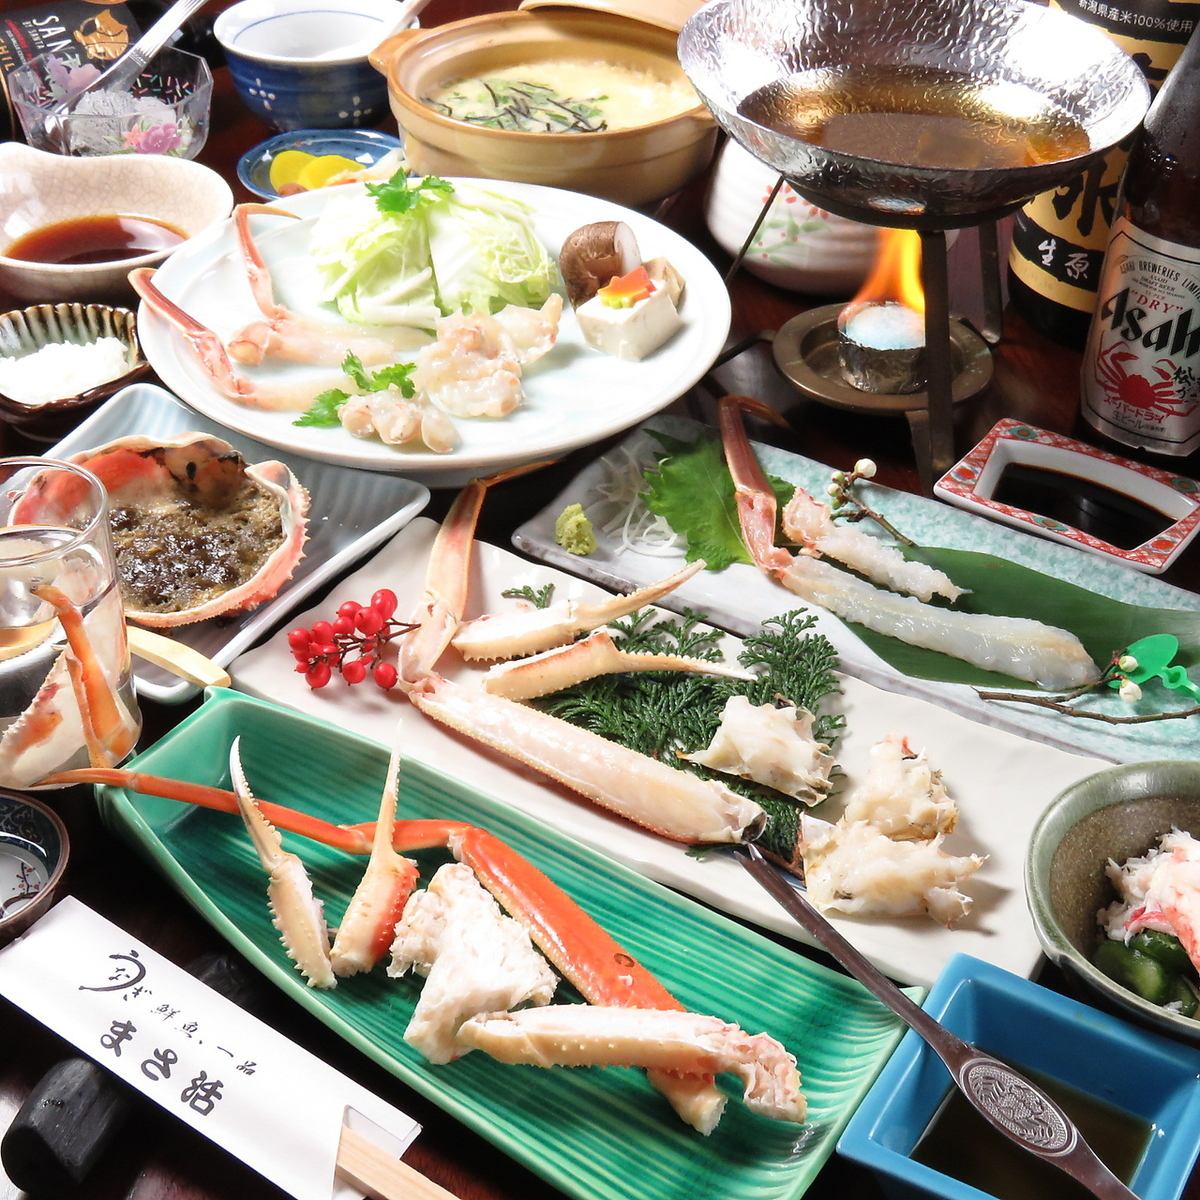 我们提供最优质的螃蟹和新鲜海鲜套餐！请尽情享受！